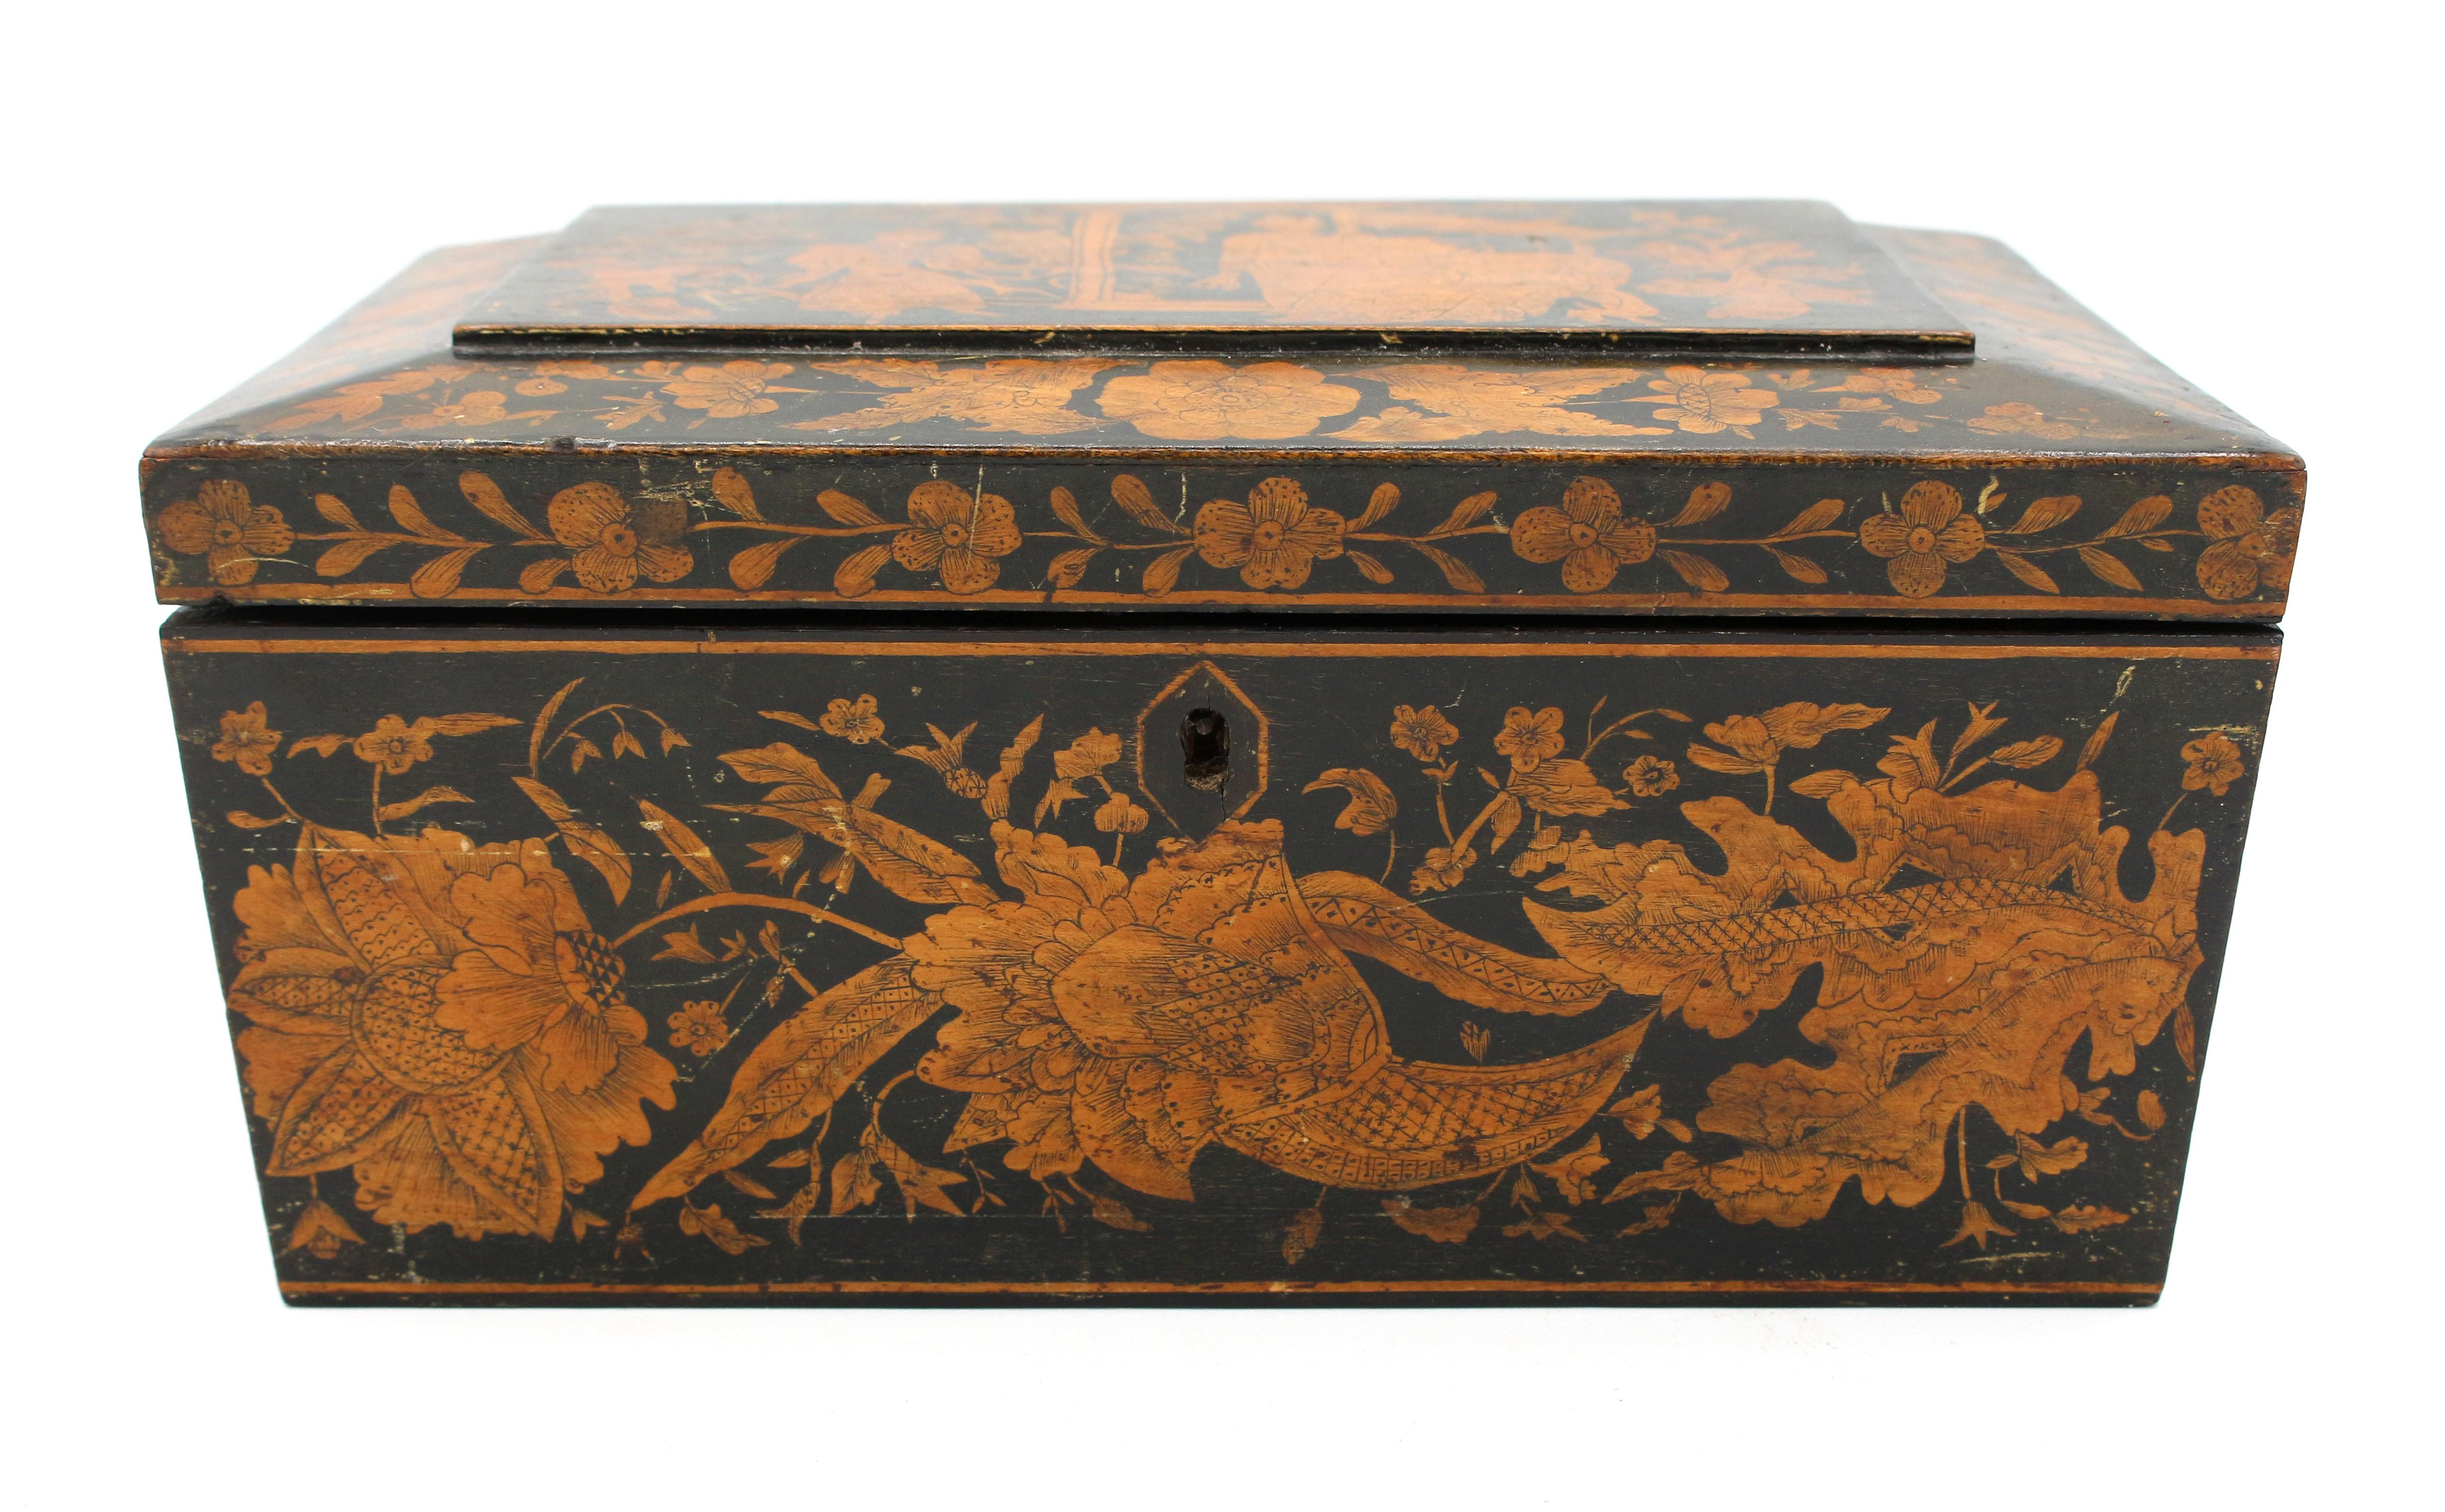 Vers 1830 Boîte à plume anglaise, Régence à George IV. Forme sarcophage ; décorée d'un grand panneau asiatique avec des côtés et des bordures floraux. Remplacement des poignées de l'anneau du masque de lion. Manque le plateau à bijoux intérieur et